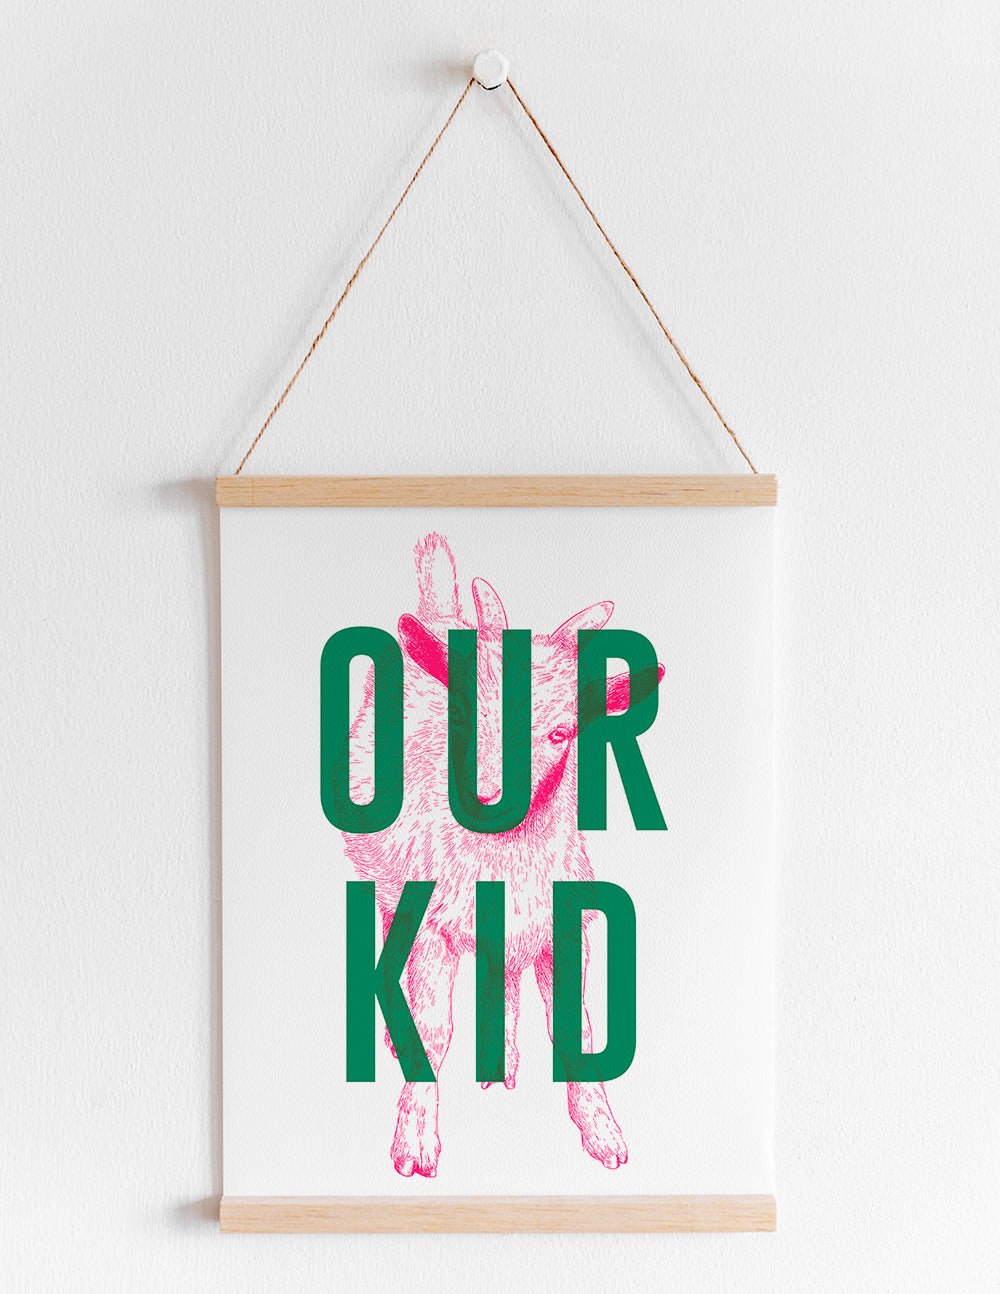 Our Kid Print - A4